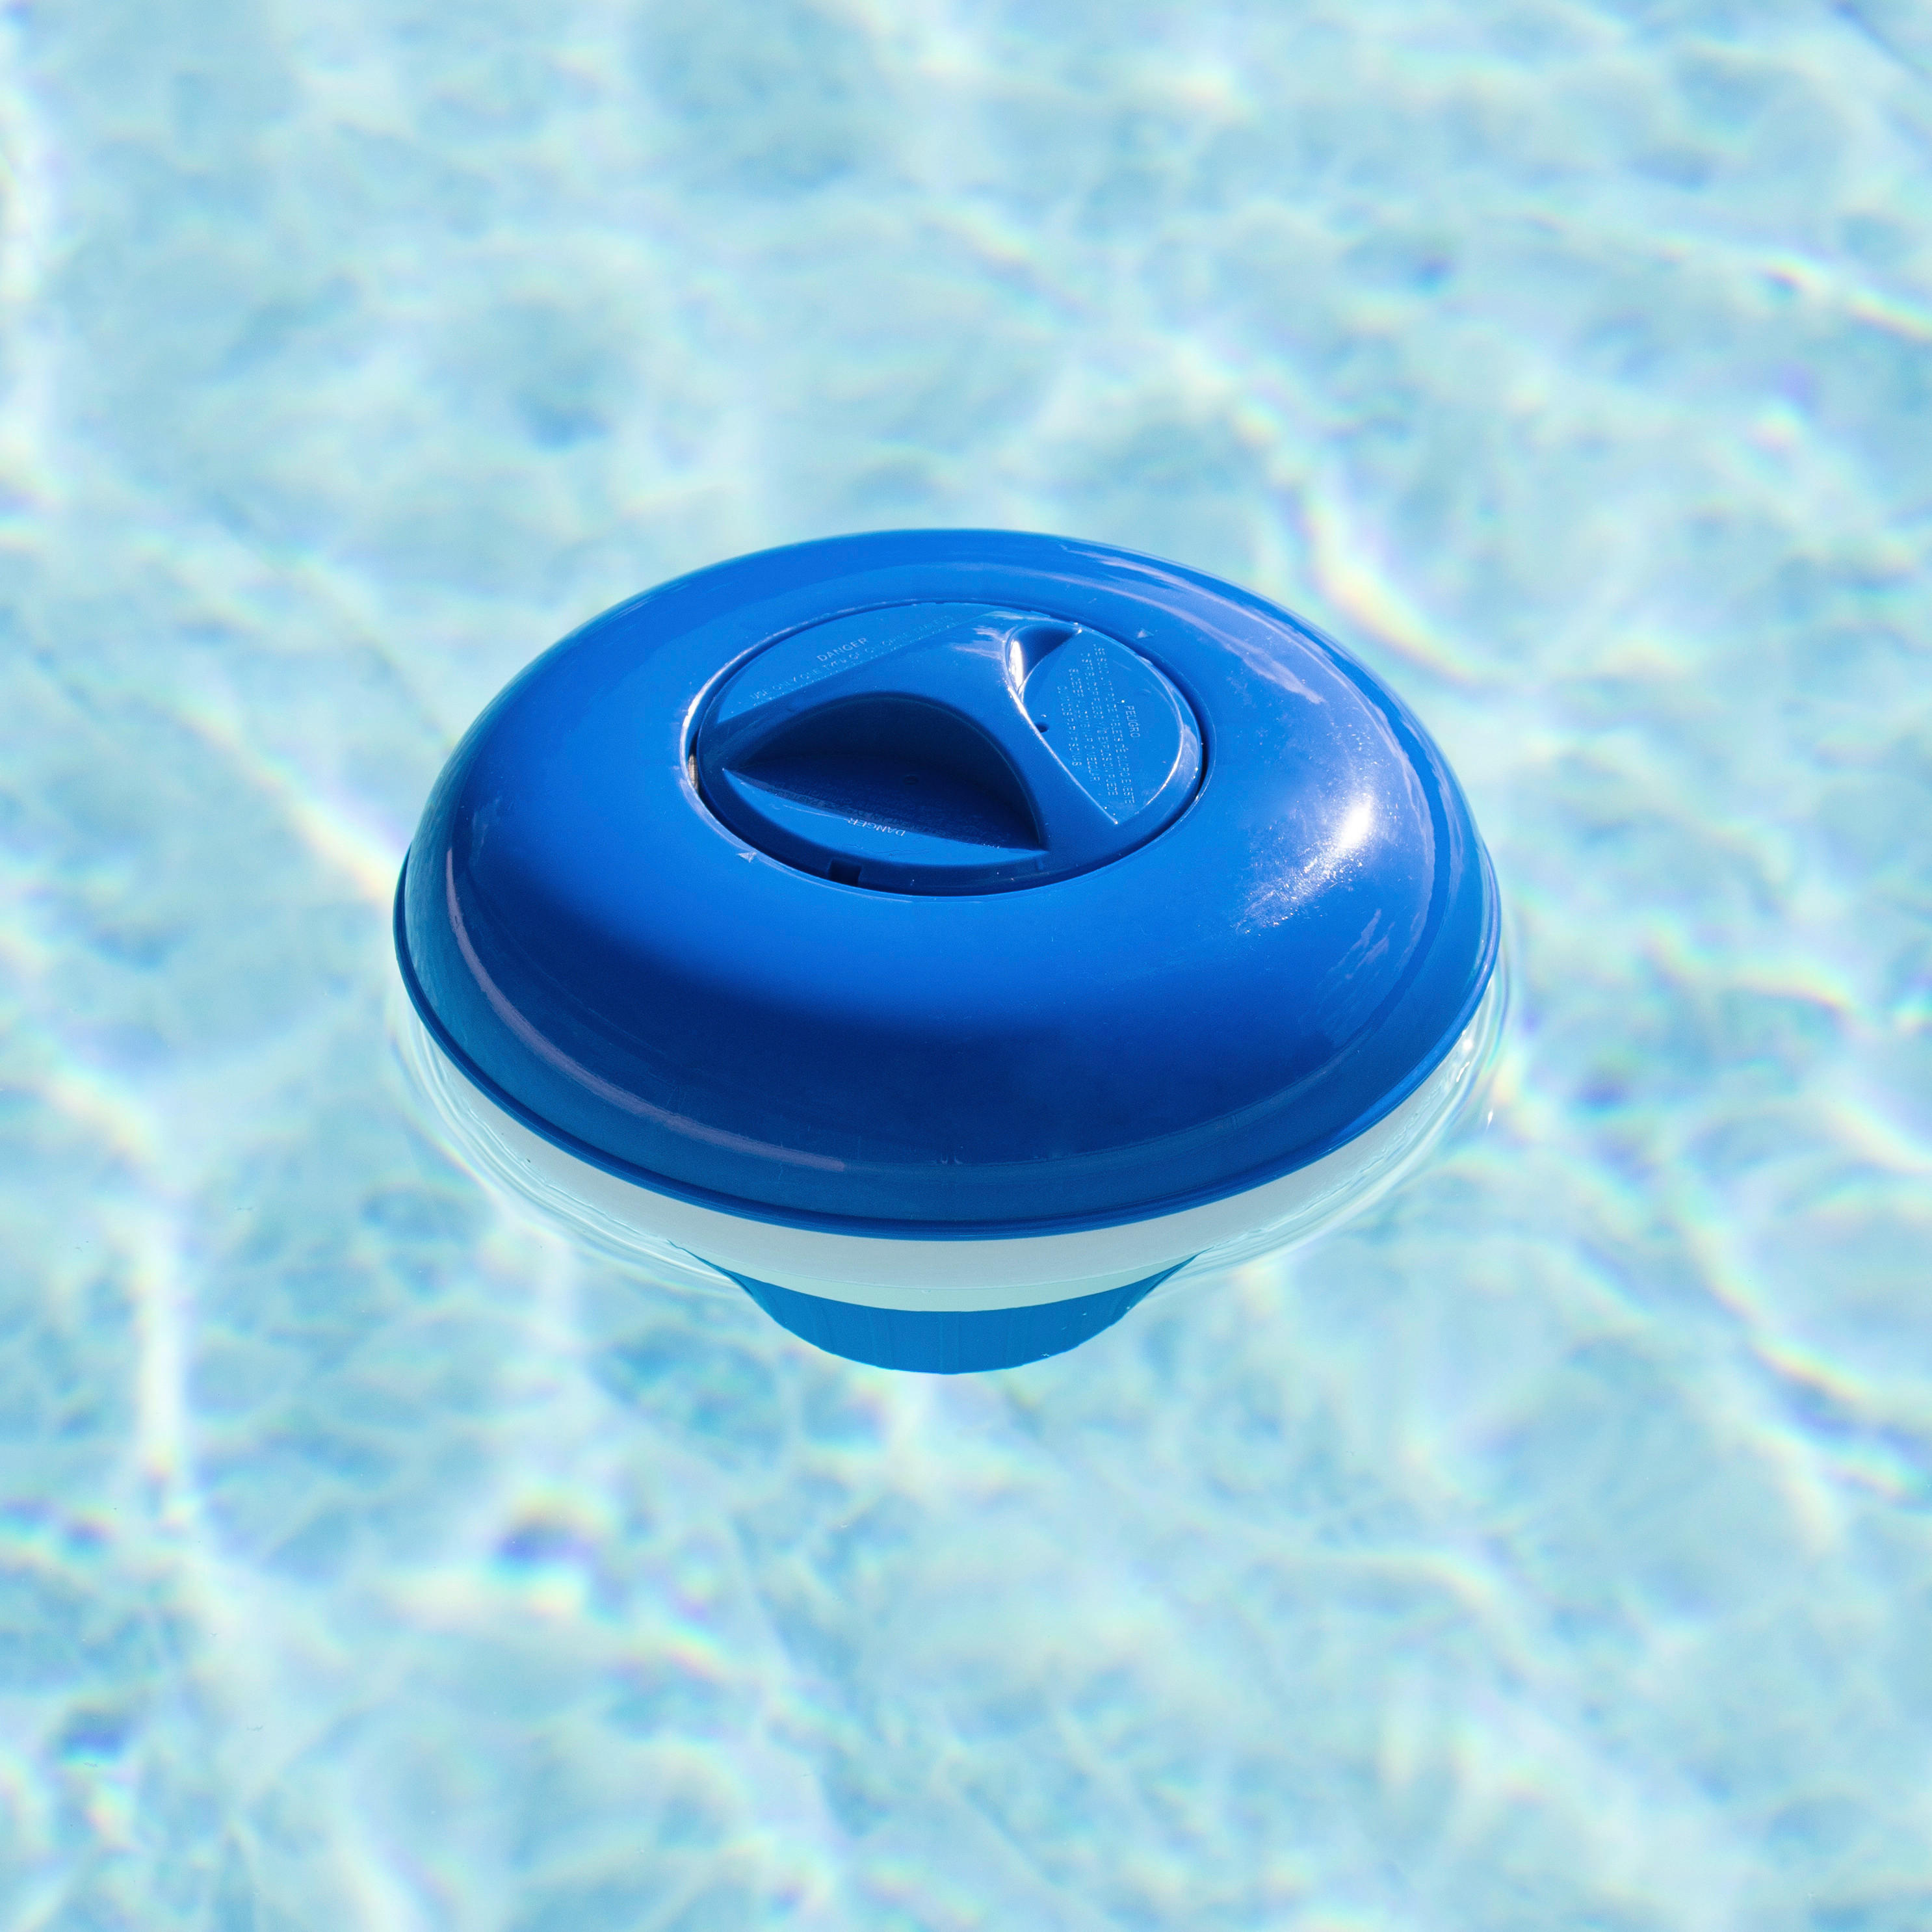 HI Dosierschwimmer blau Kunststoff D: ca. 22 cm Dosierschwimmer - blau/weiß (22,00cm) - HI